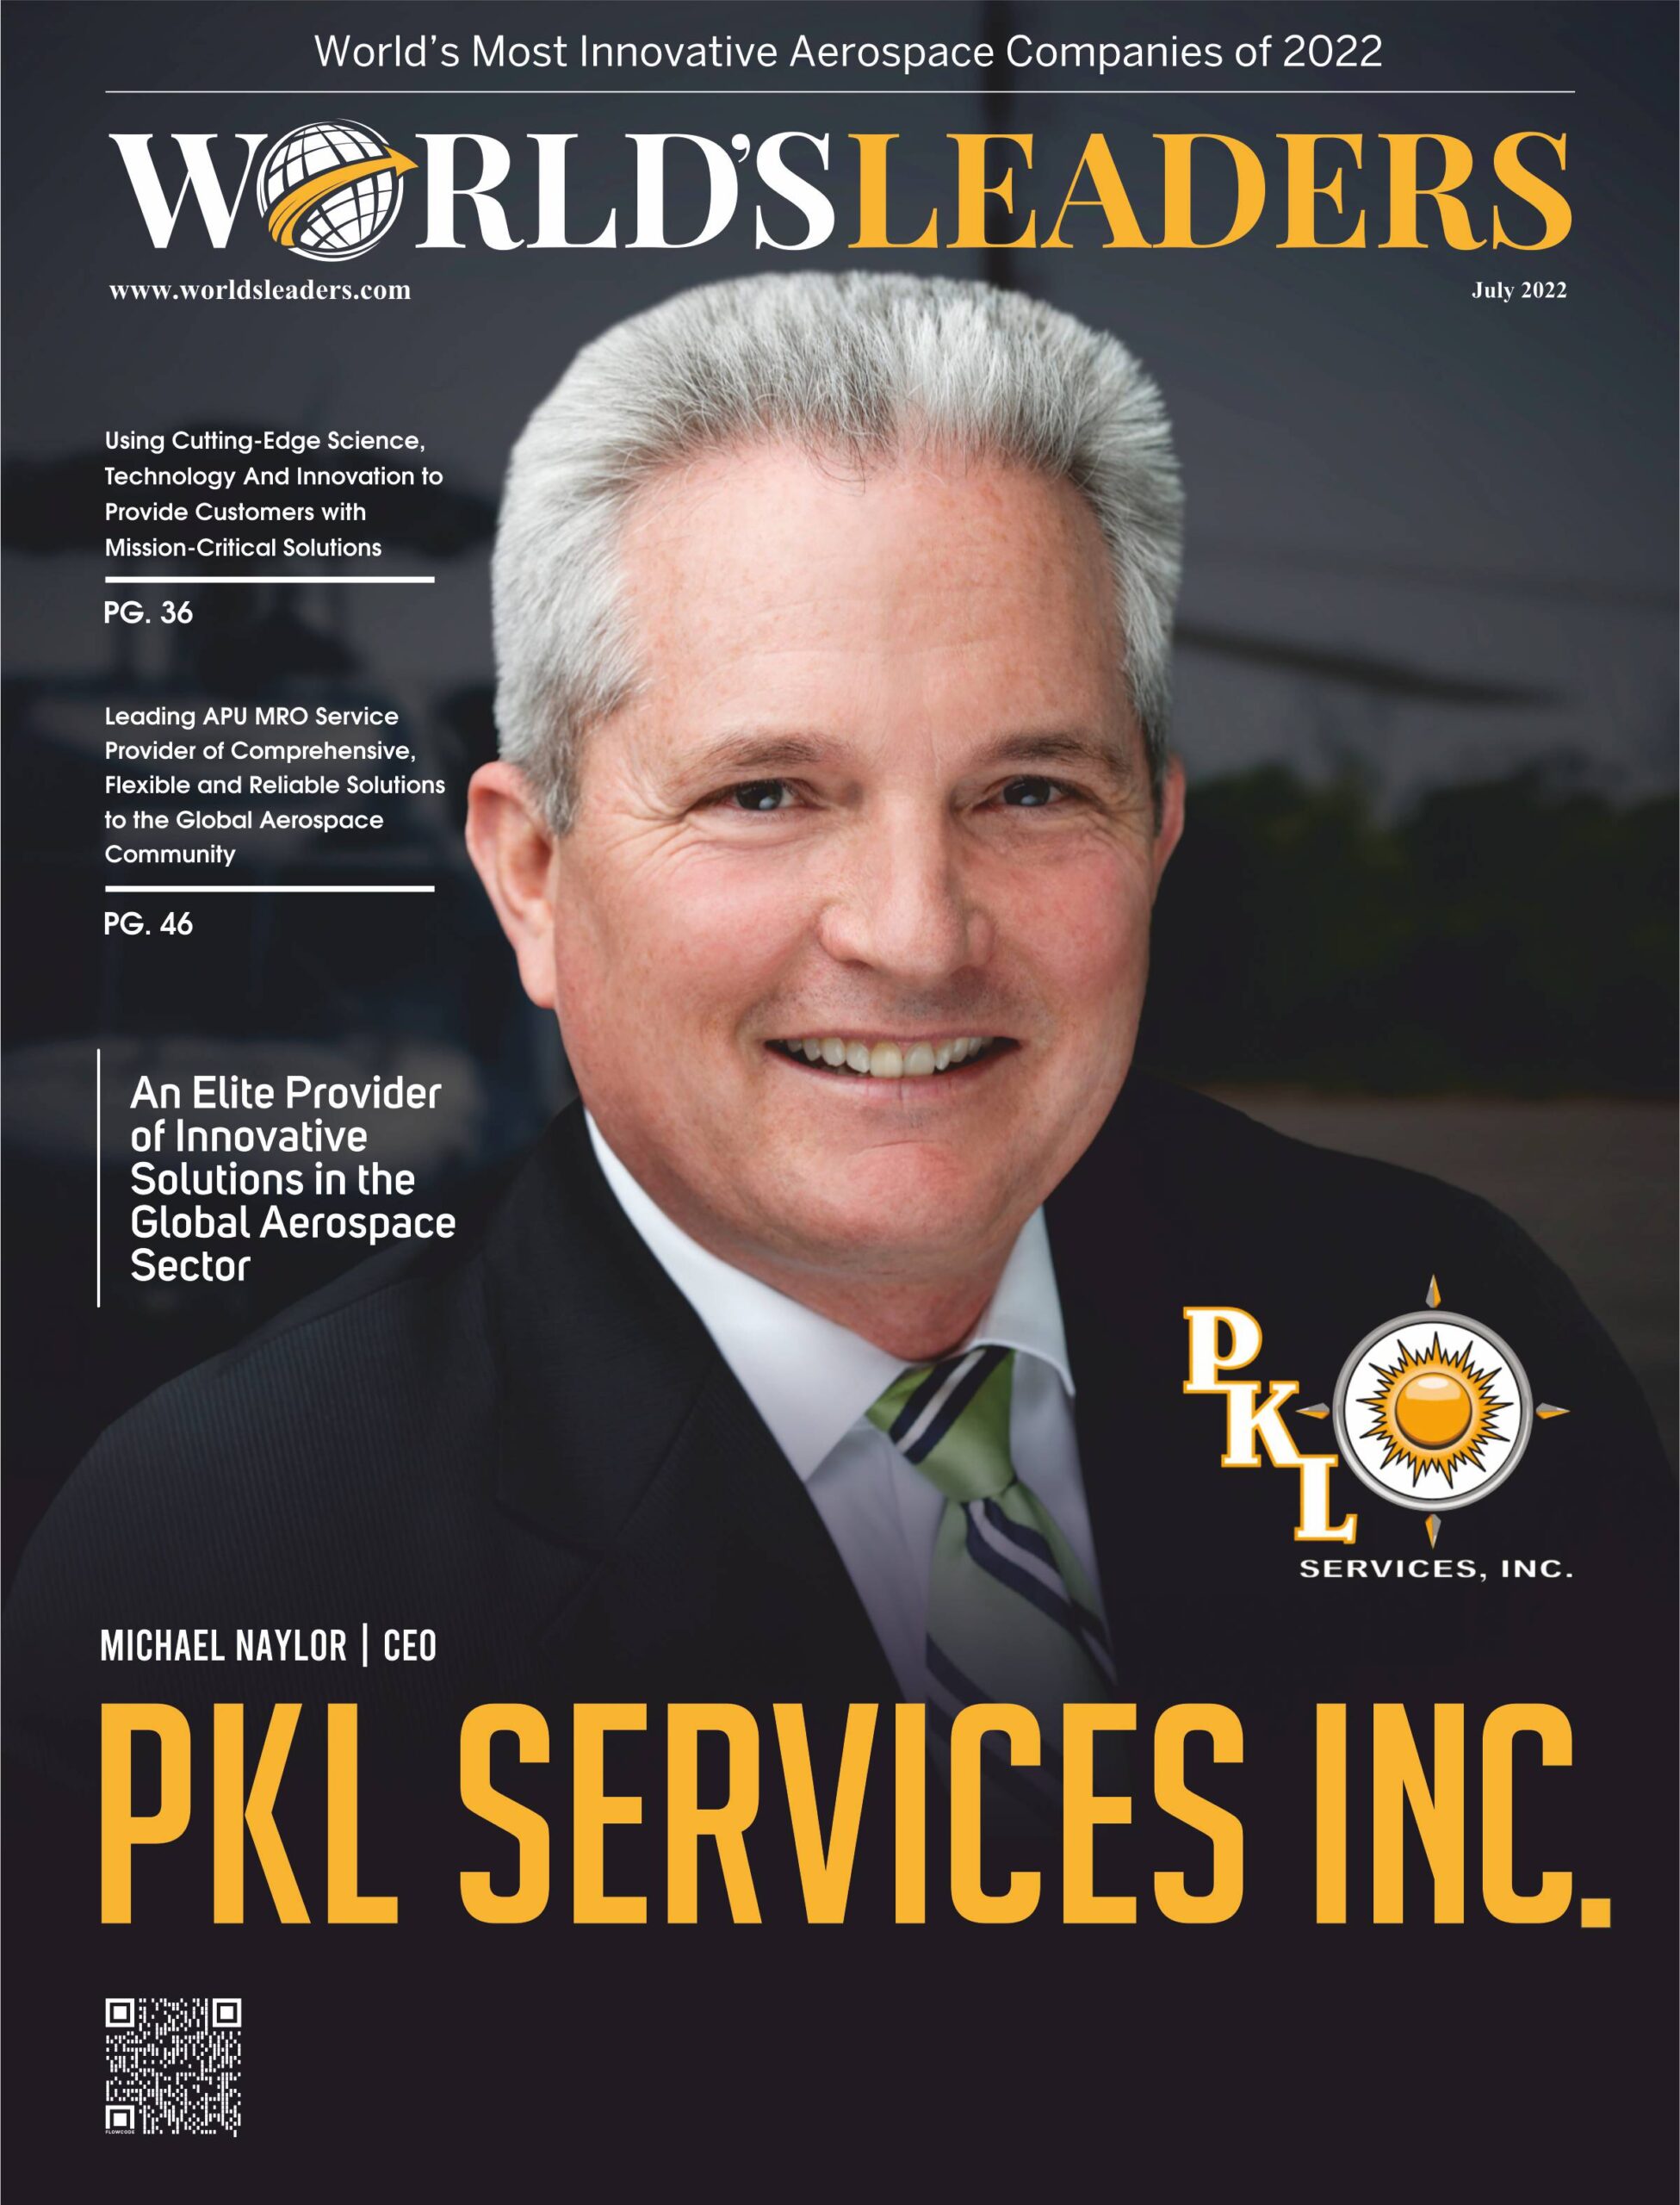 PKL Services, Inc